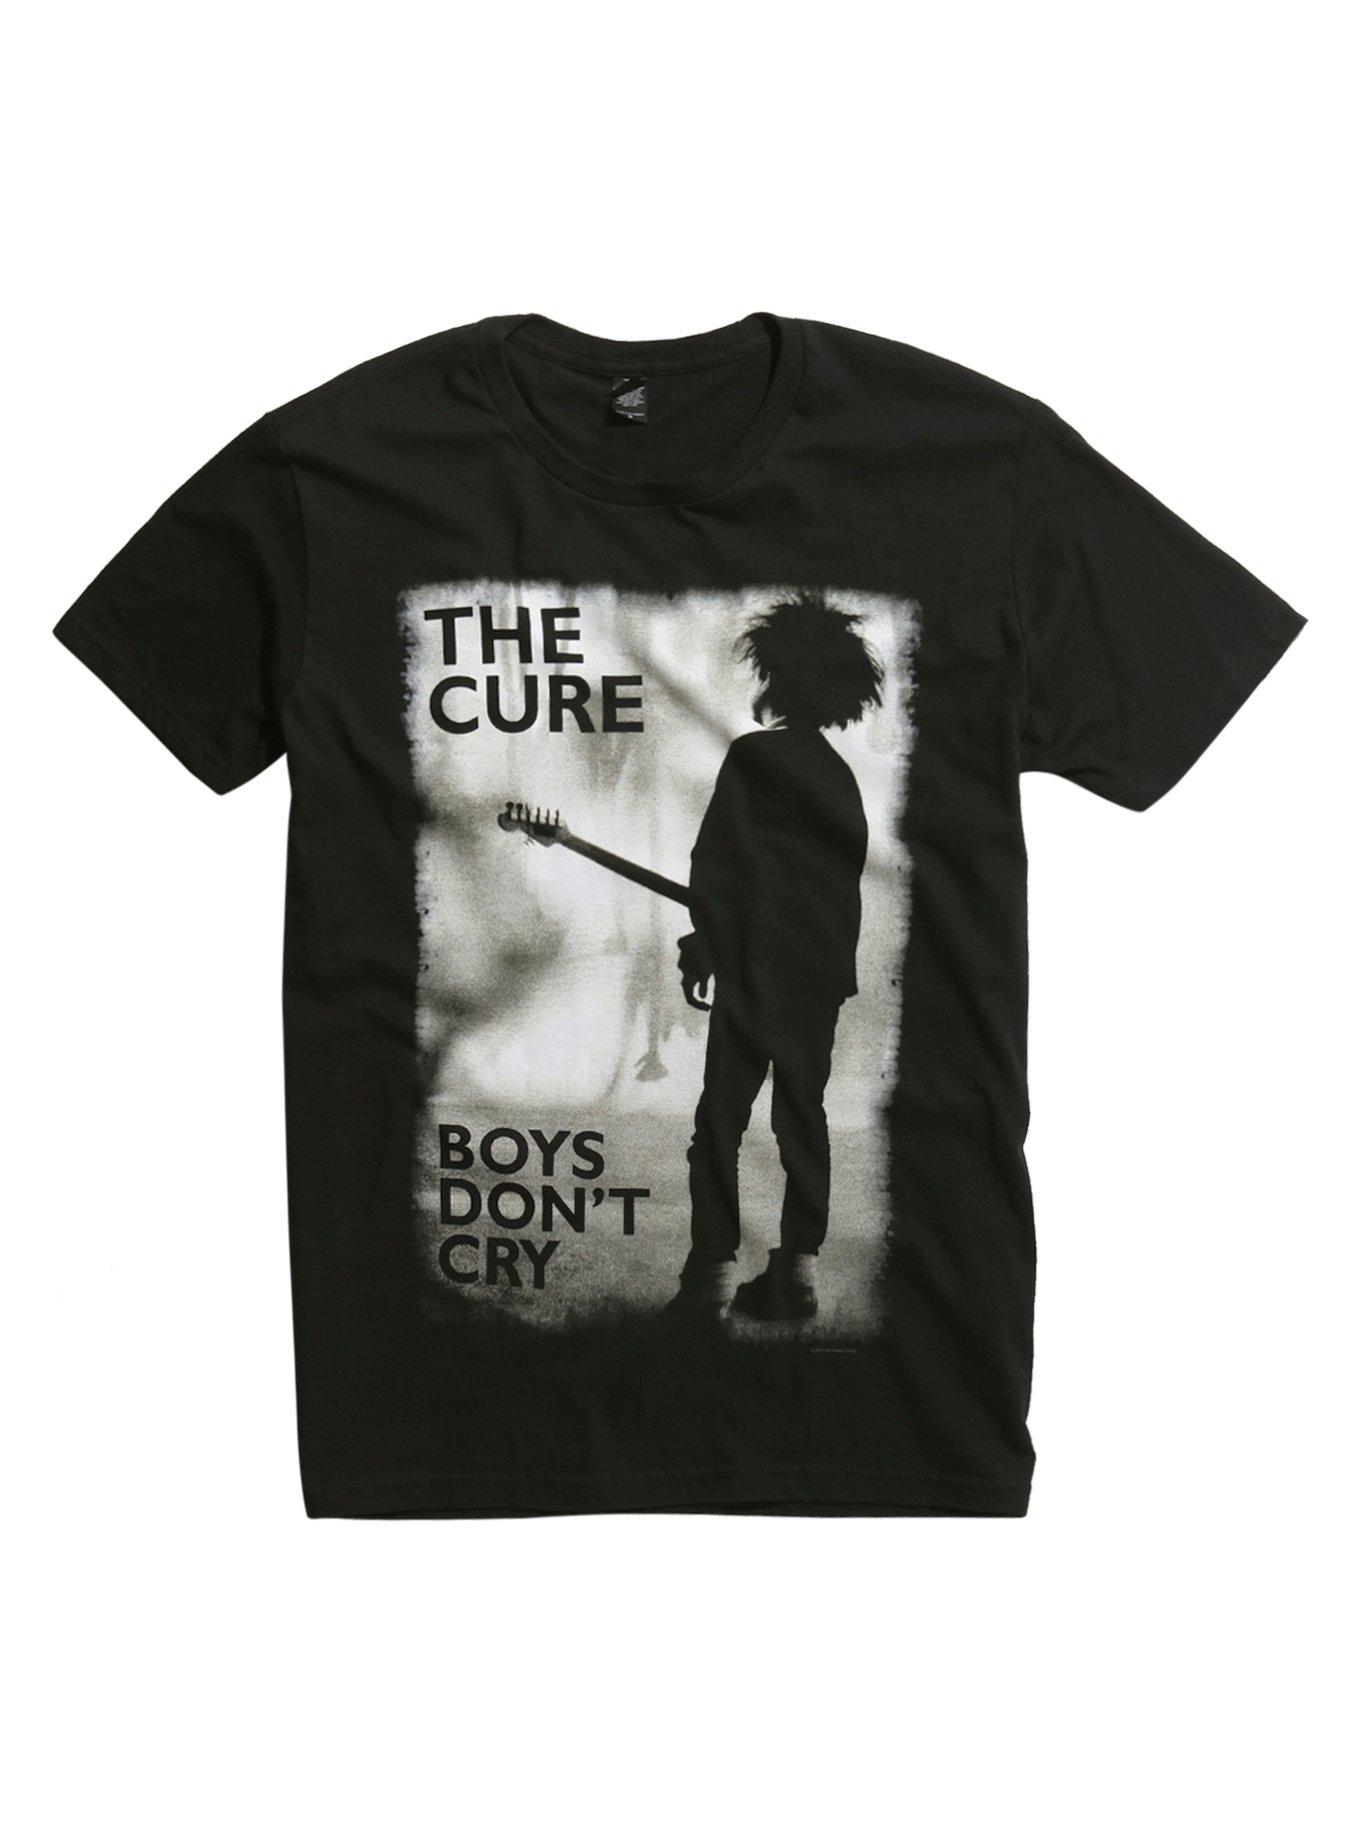 Depeche Mode Boy Dont Cry T-Shirt For Men Women Ladies Kids Shirts Womens Mens Kids Street Tee